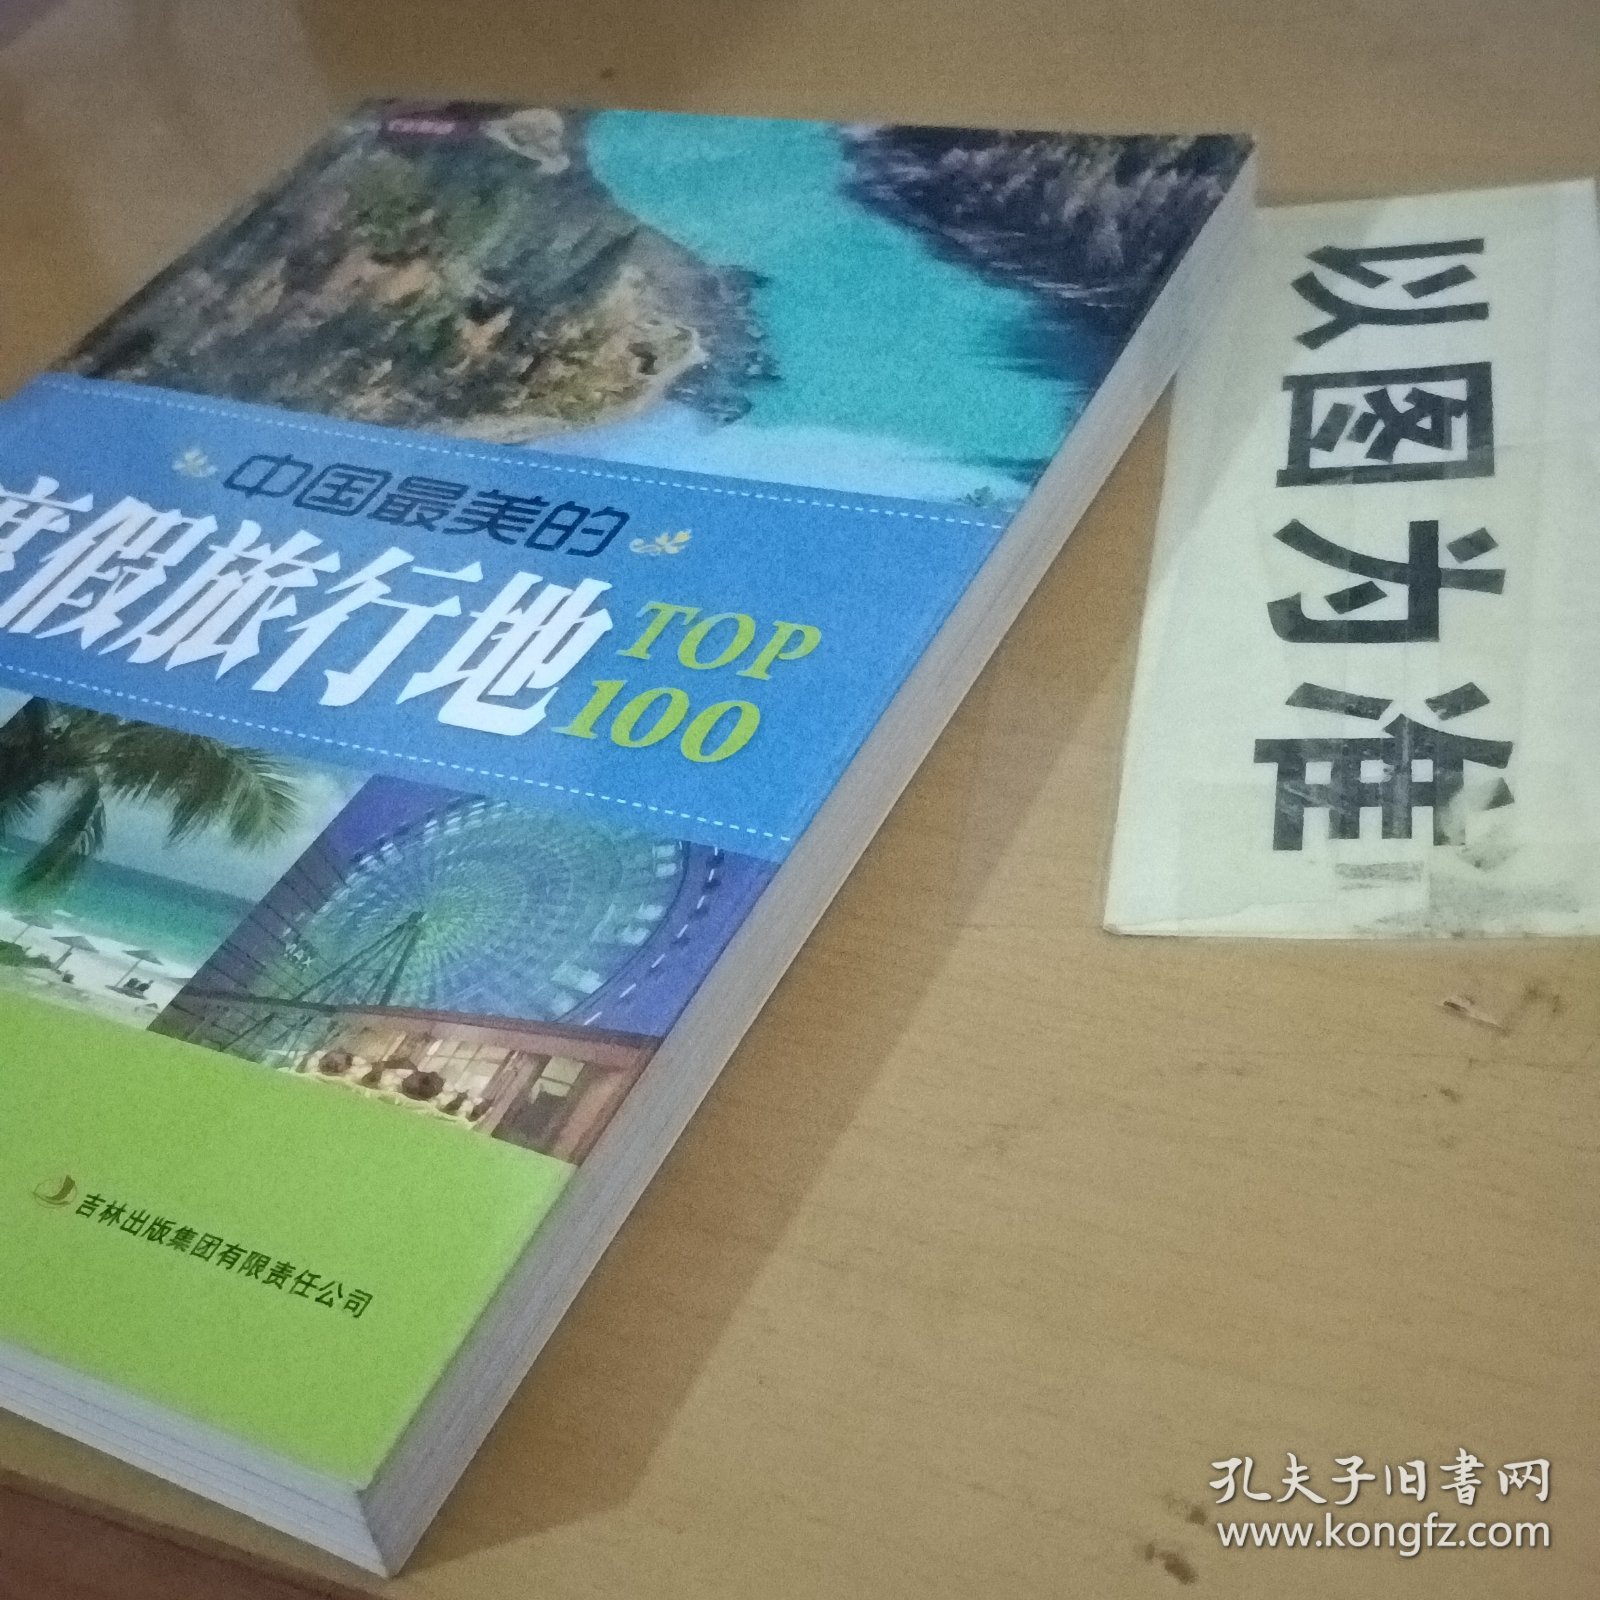 七彩生活：中国最美的度假旅行地TOP100